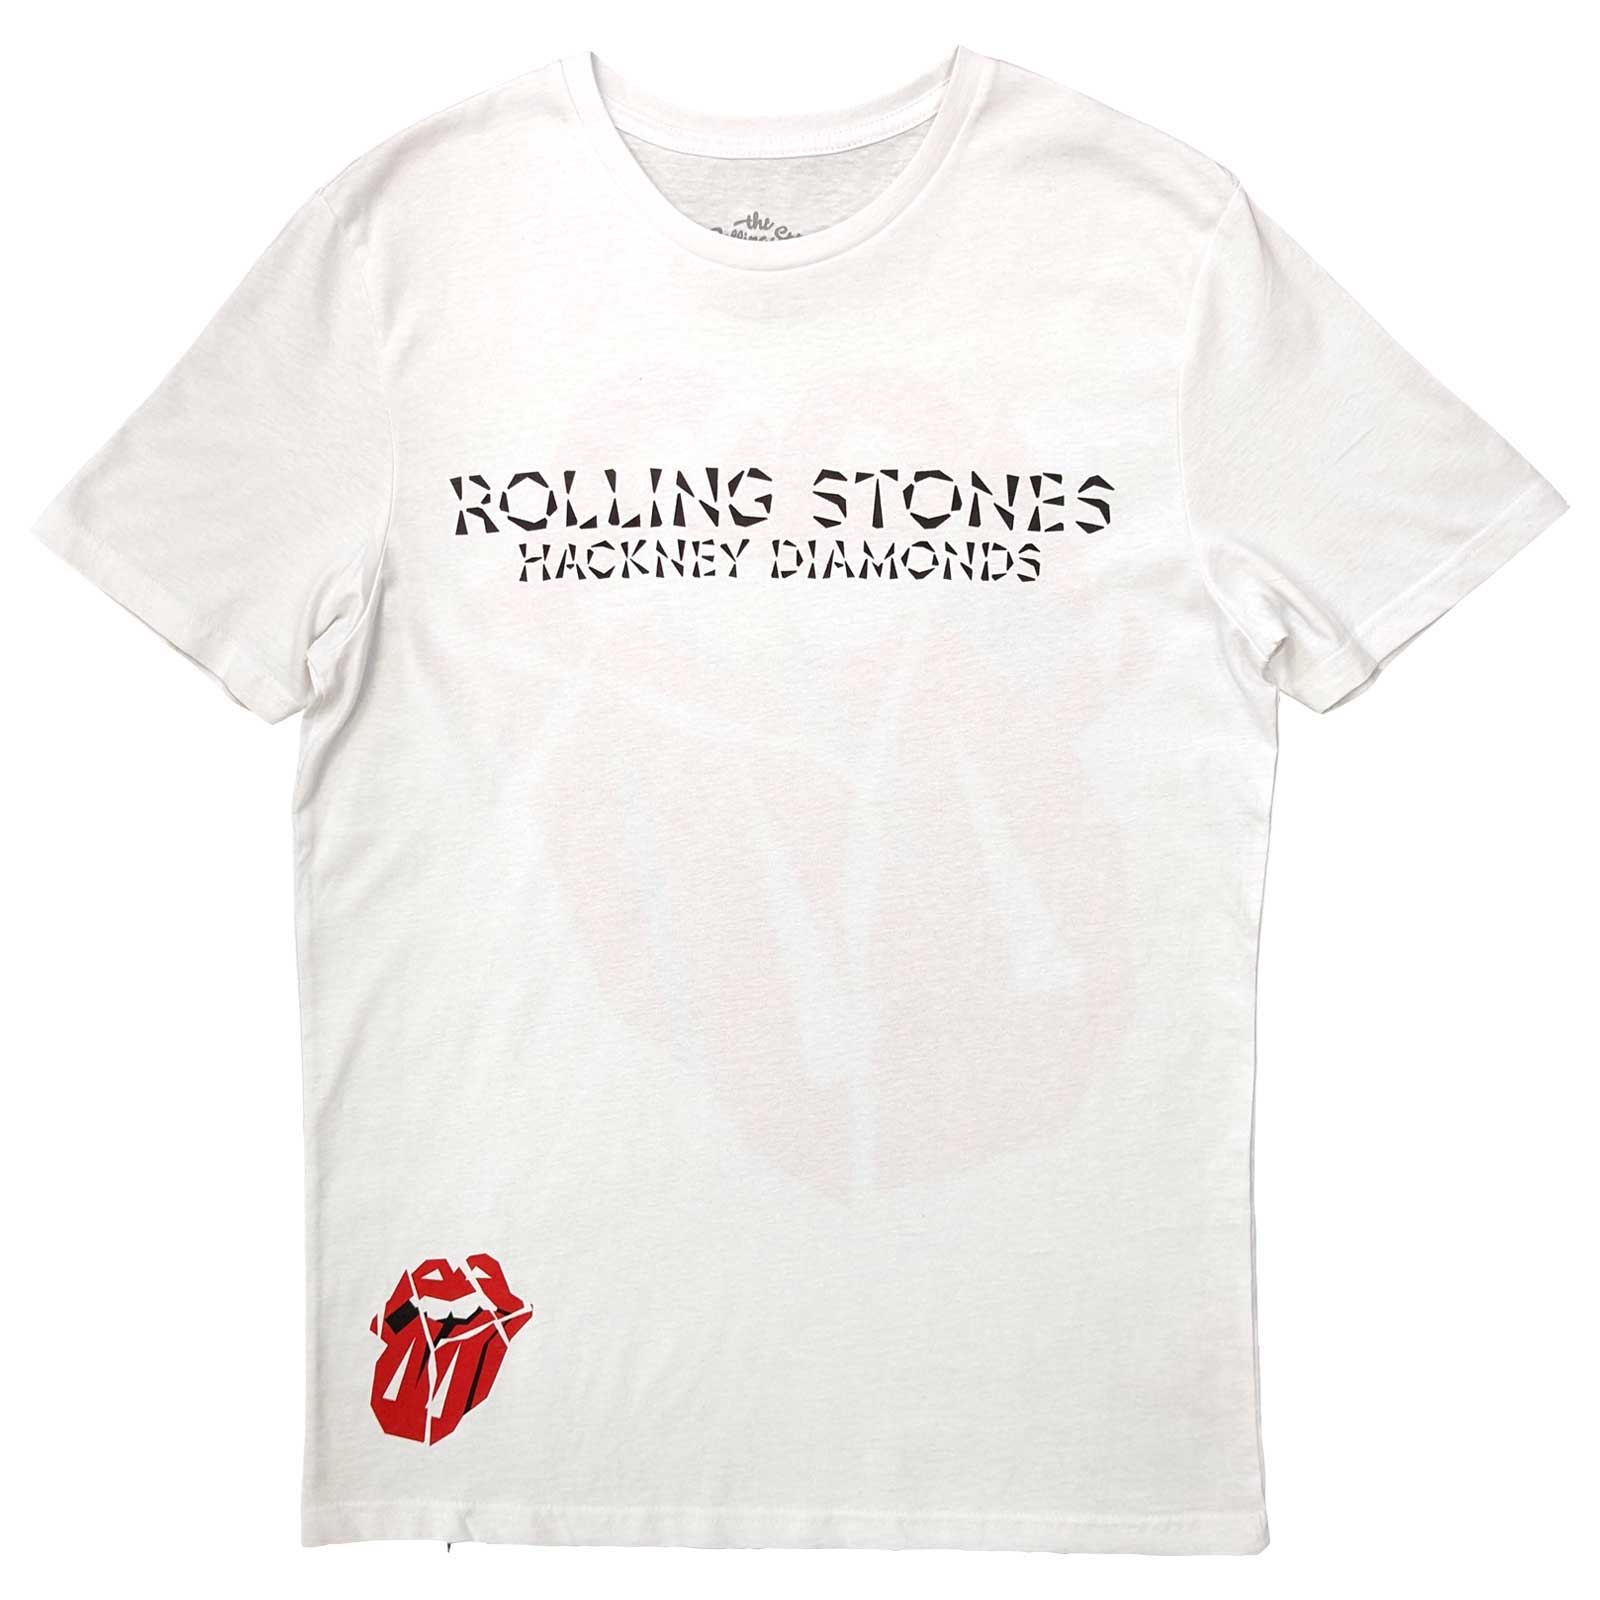 T-shirt pour adulte des Rolling Stones – Hackney Diamonds Lick (impression au dos) Blanc, design sous licence officielle